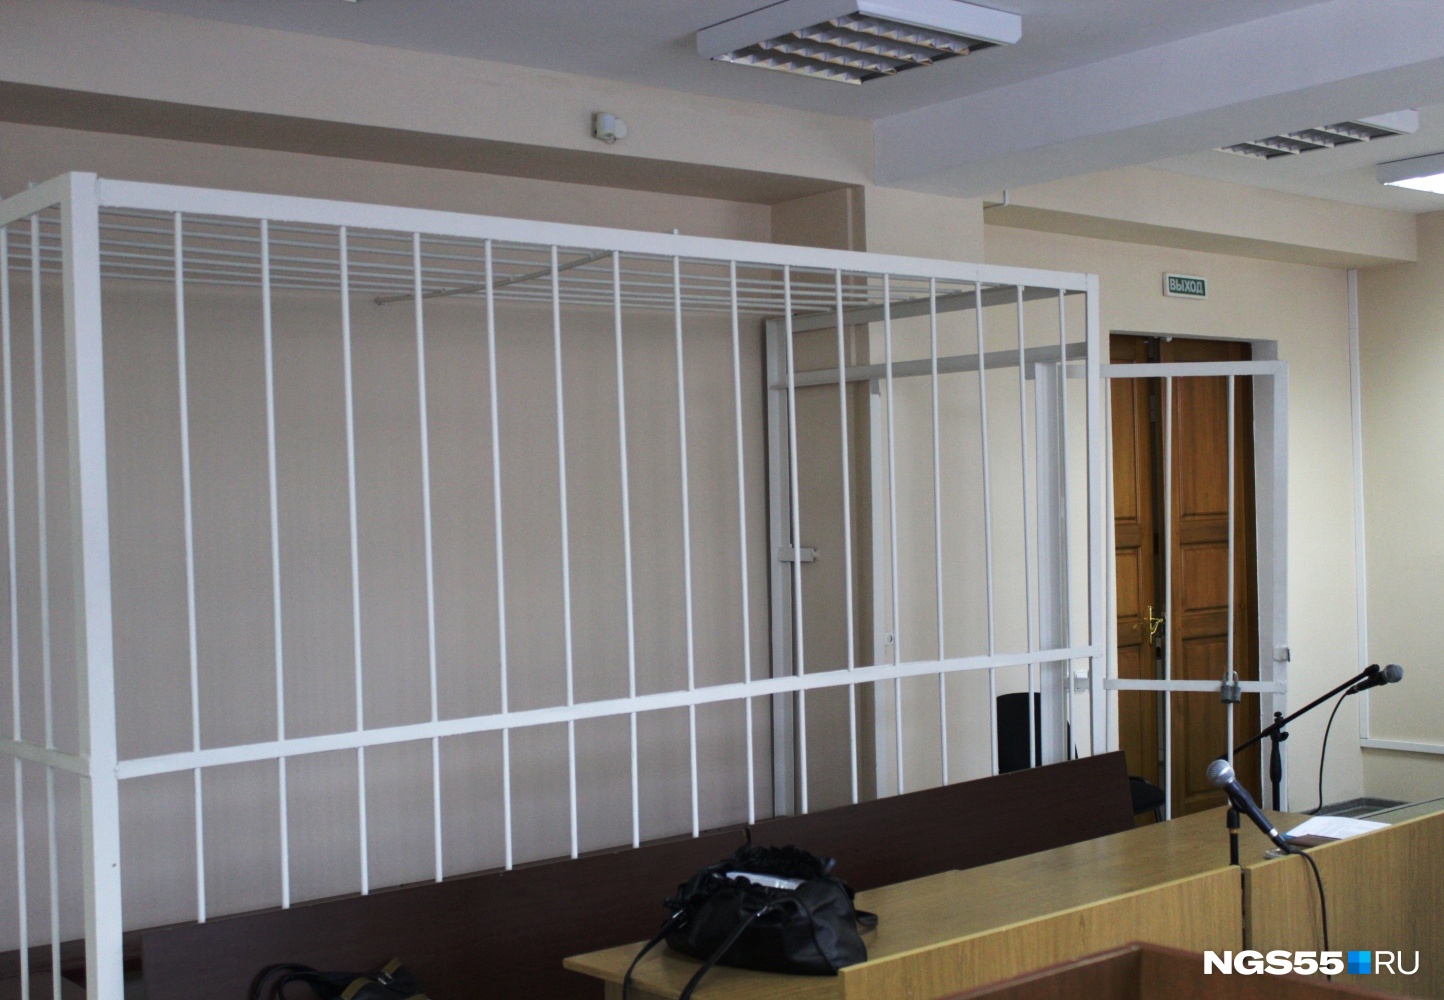 Суд приговорил главаря ОПГ из 21 человека в Забайкалье к 19 годам